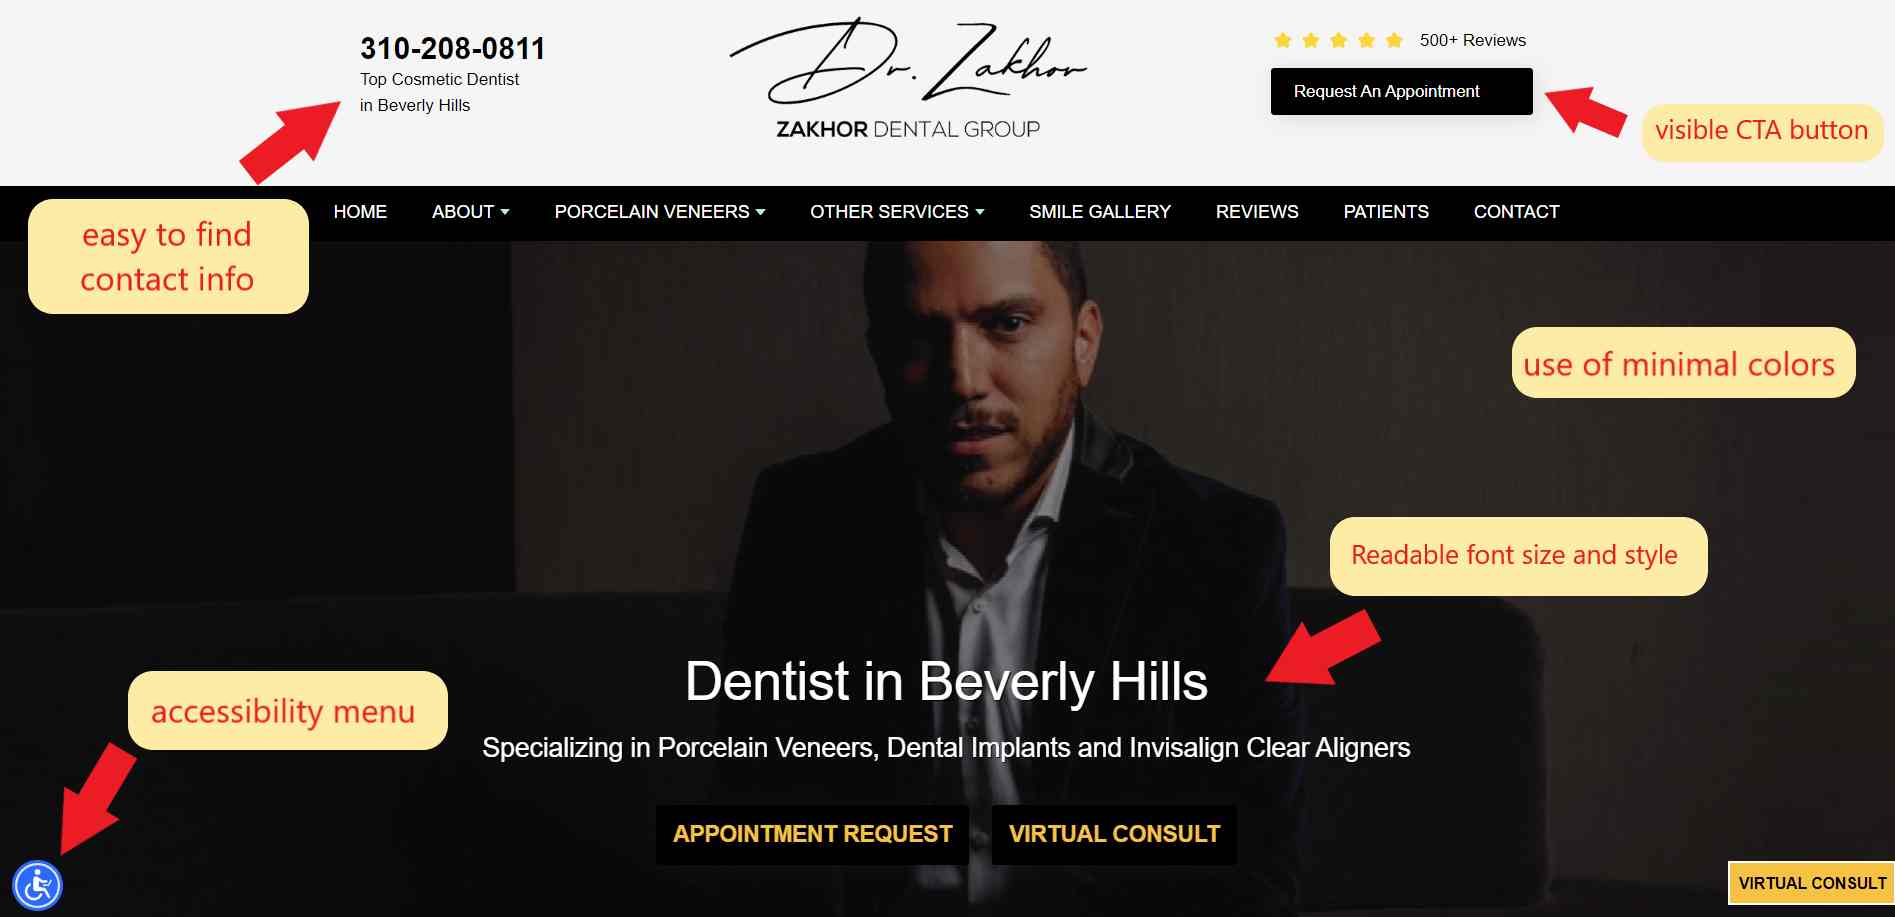 Dental marketing plan website example 2